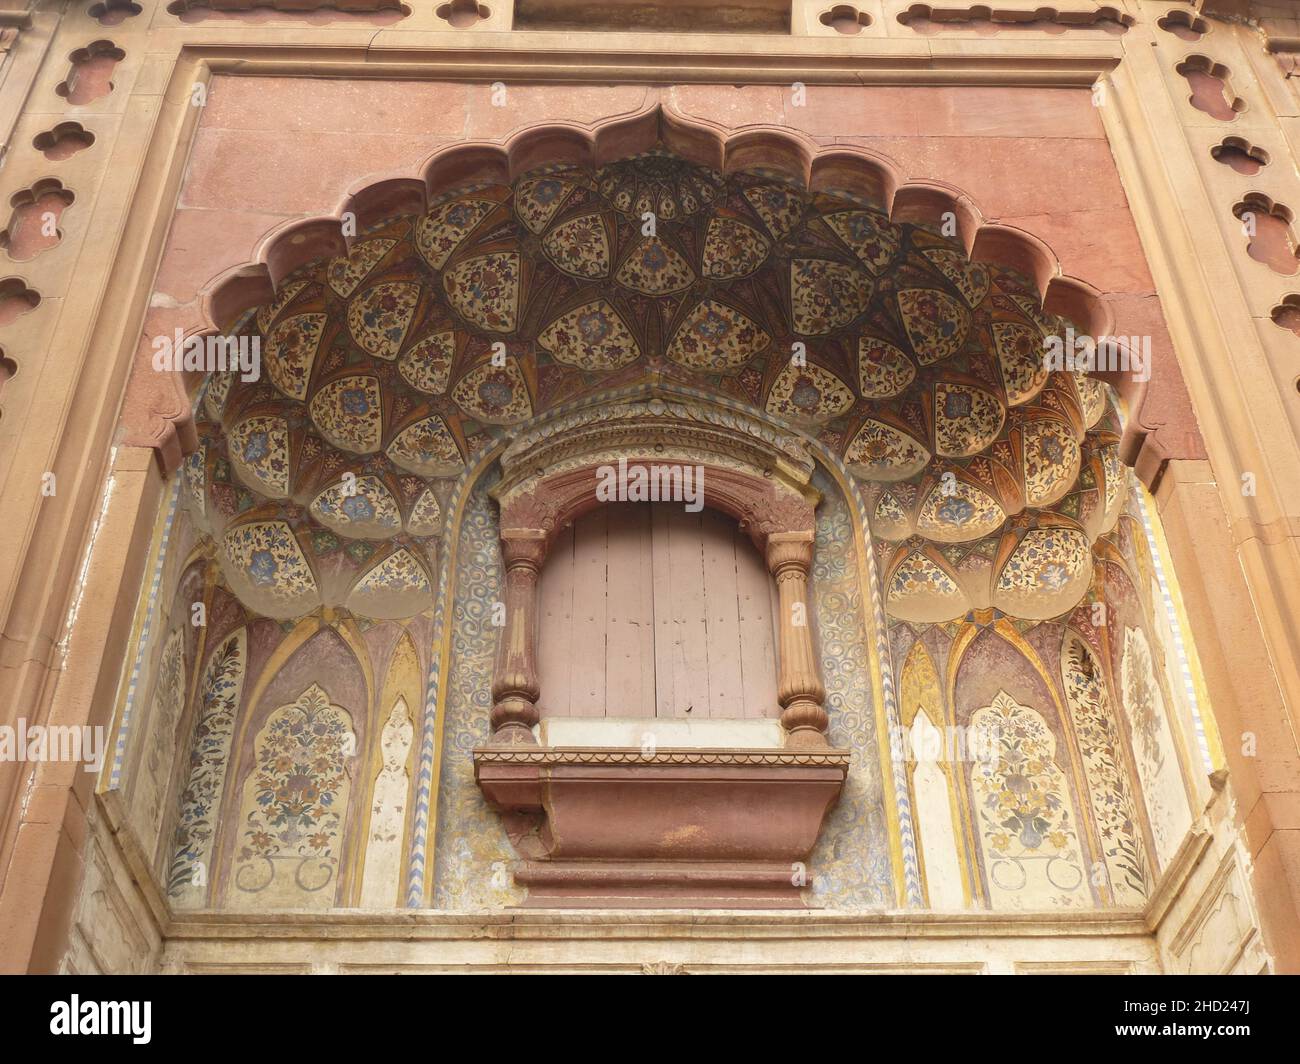 Beautiful jharokha at Safdarjung's tomb in Delhi Stock Photo